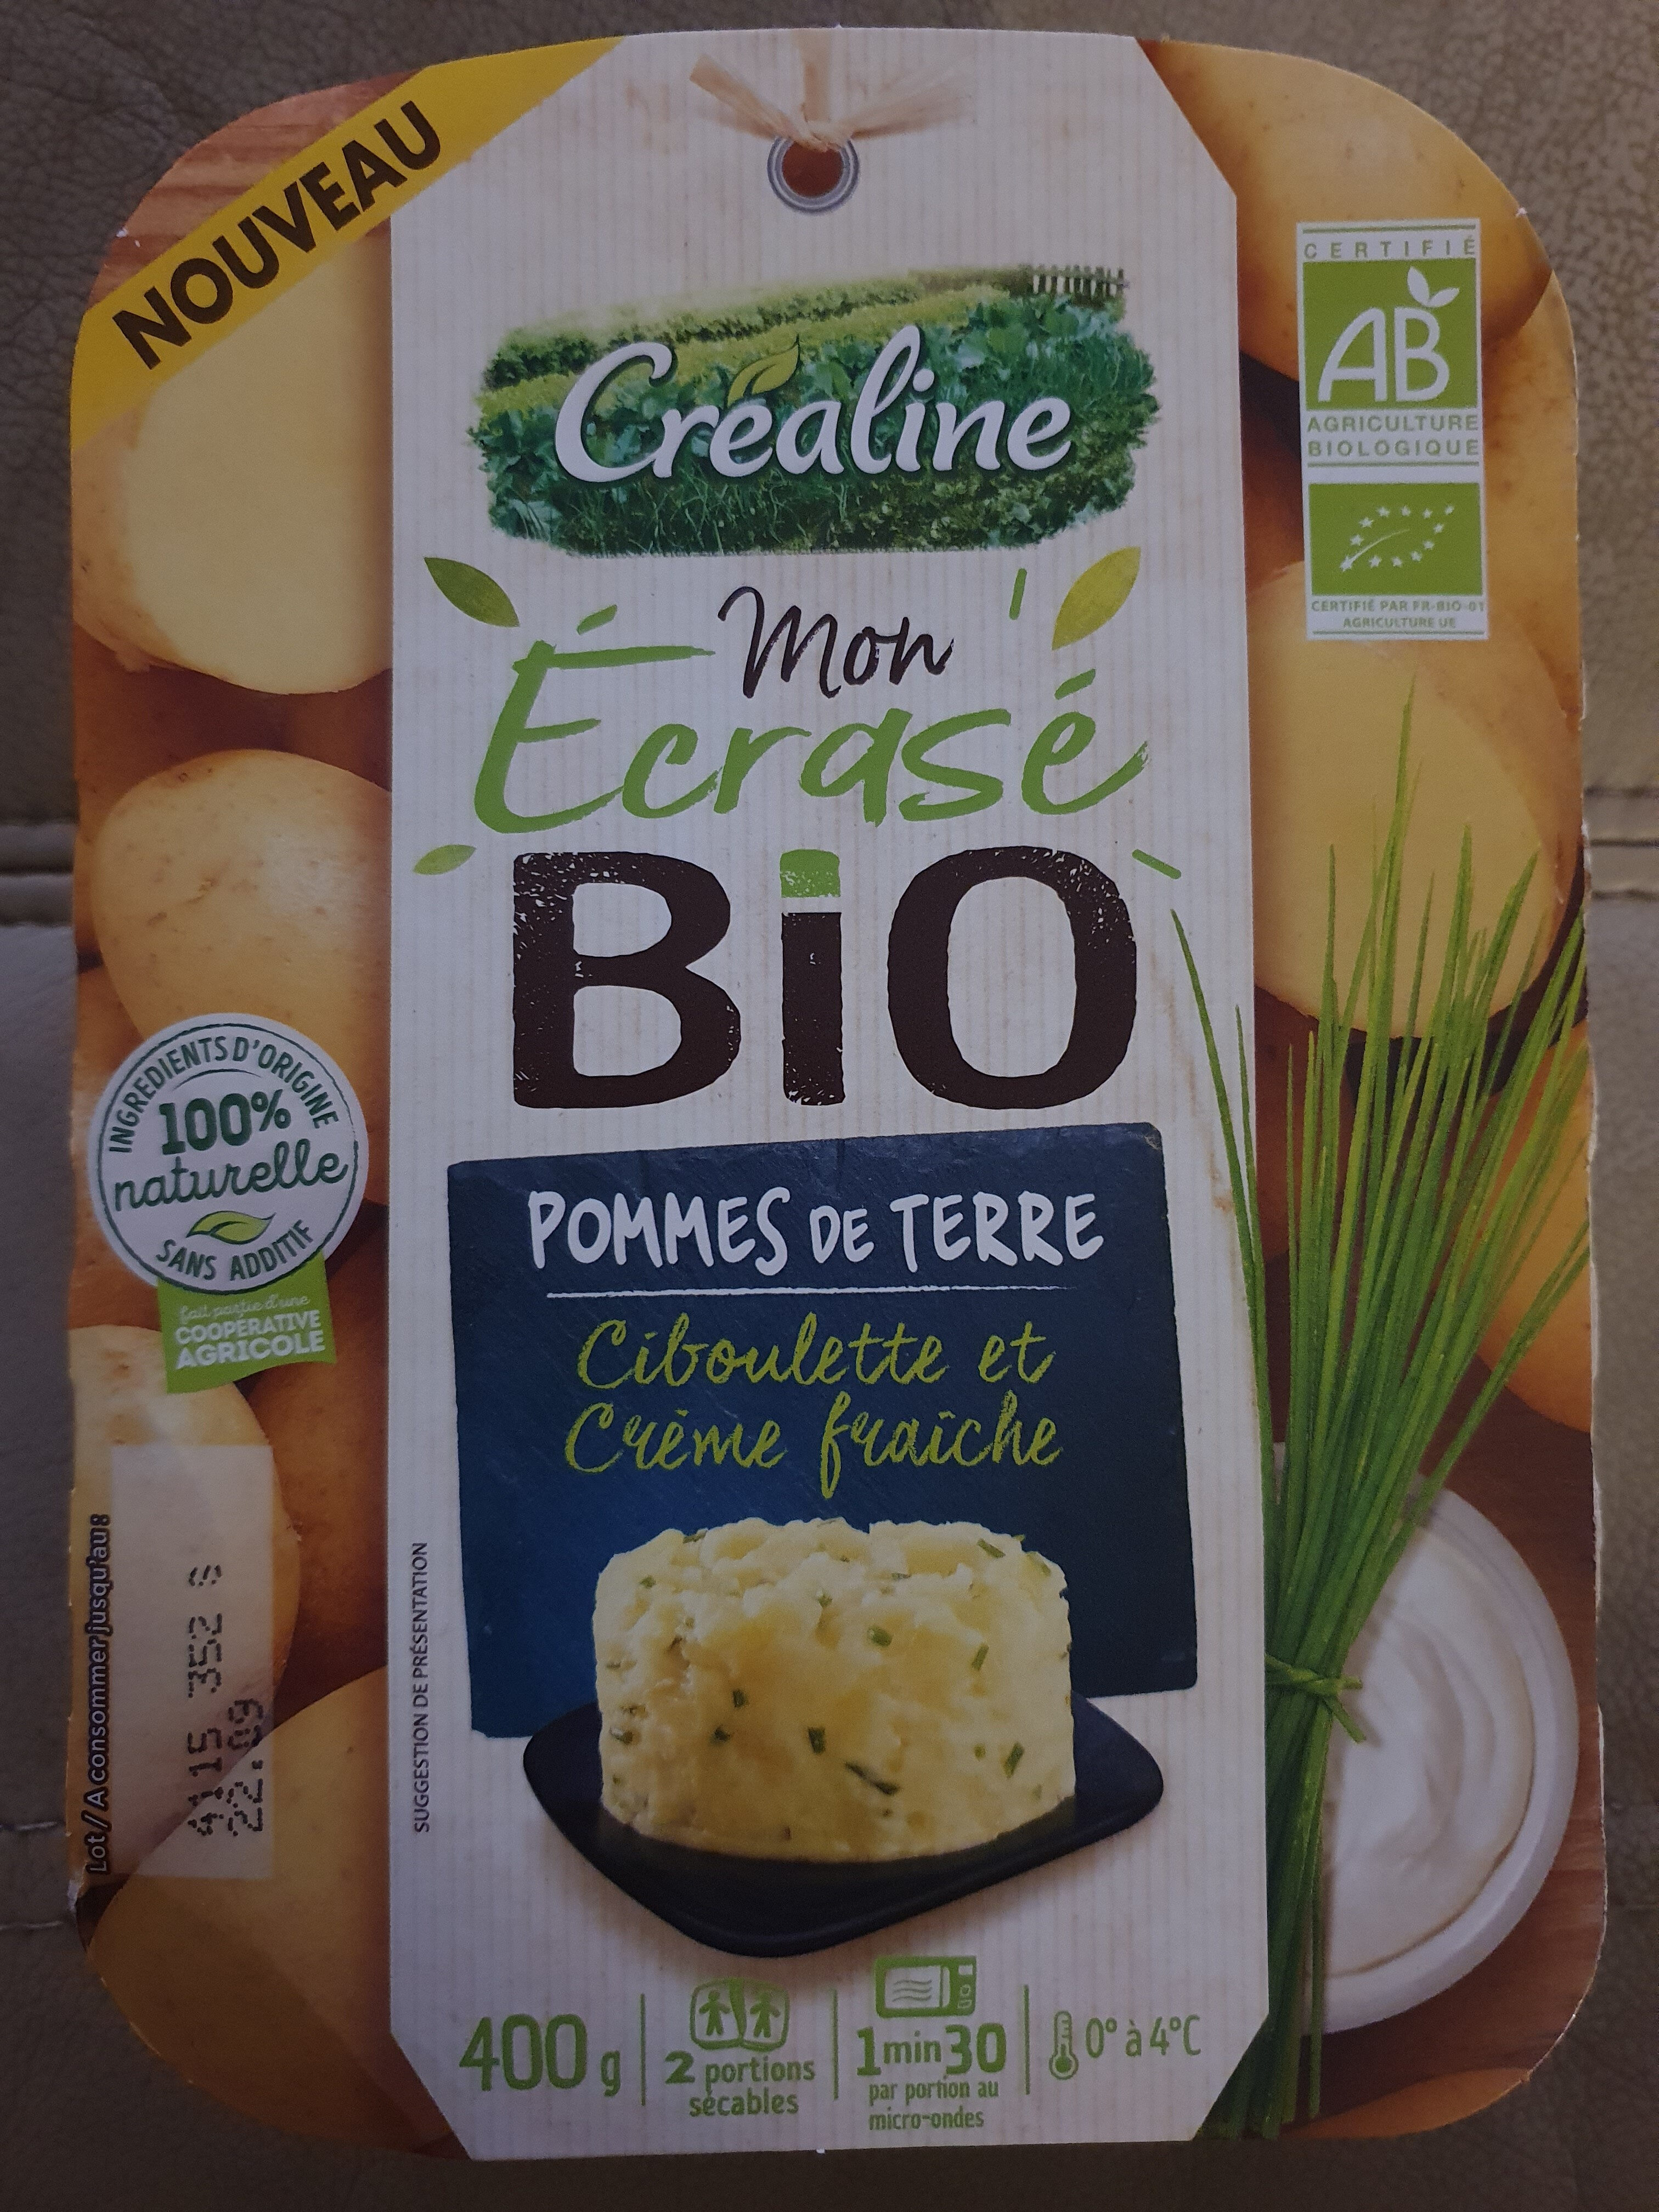 Mon écrasé Bio pommes de terre, ciboulette et crème fraiche - Producto - fr